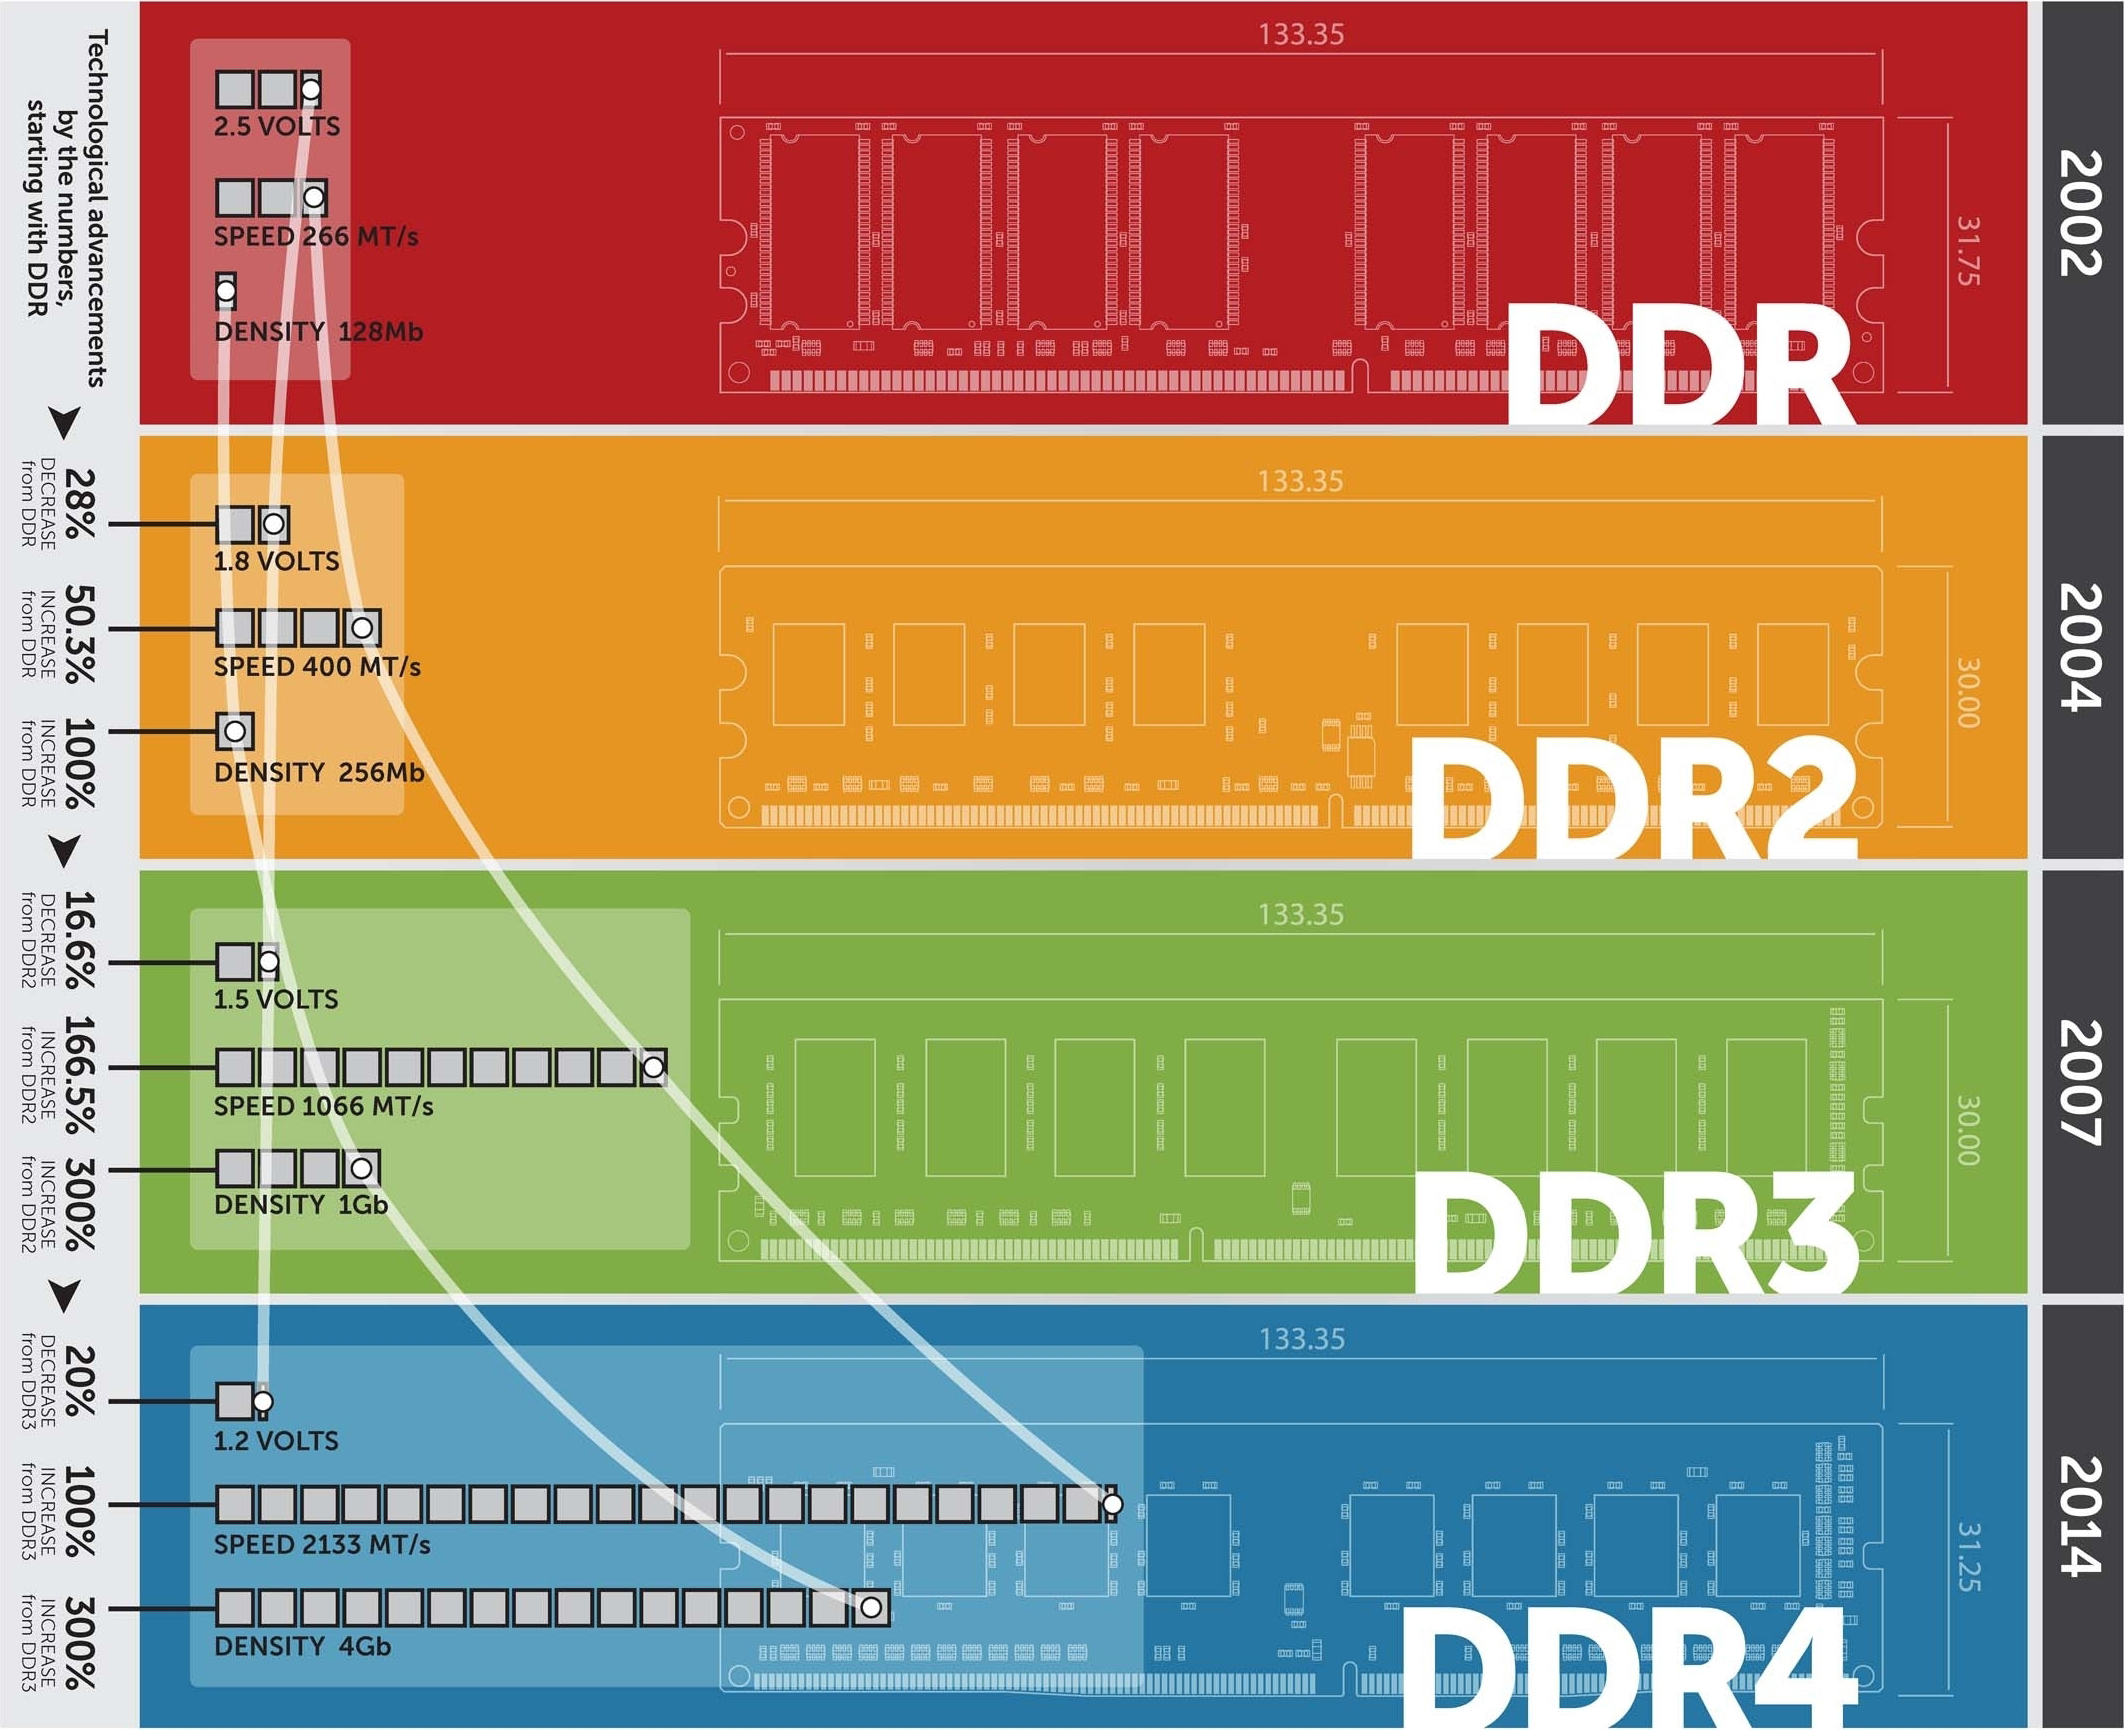 Gráfico que demonstra a melhora das capacidades da Memória RAM DDR4 em comparação a versões anteriores, aumentando o dobro em velocidade e o triplo de densidade de dados